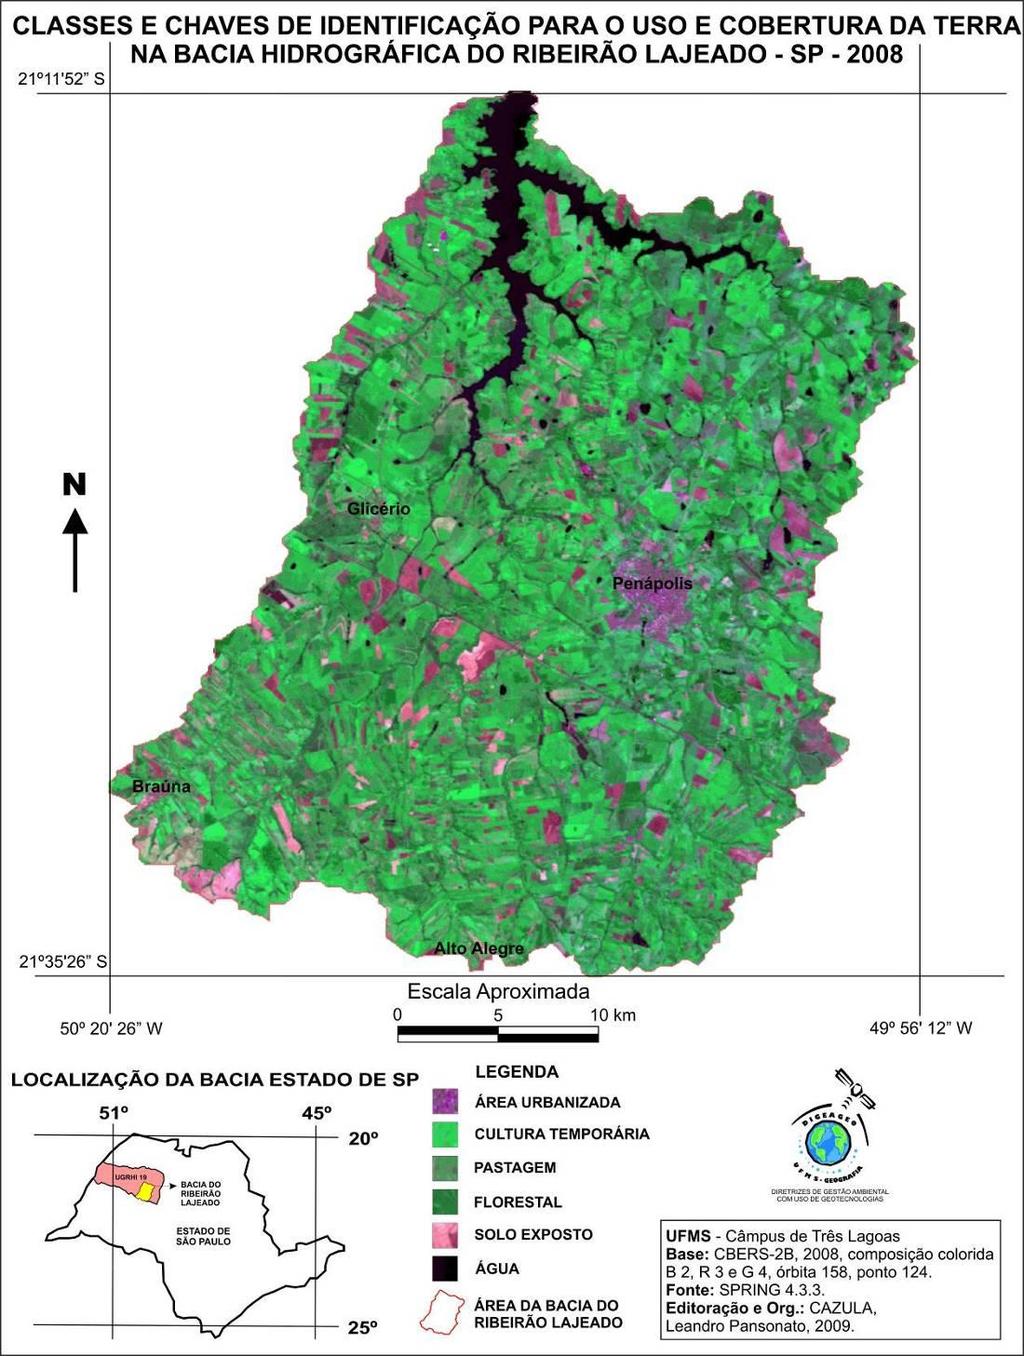 Figura 3: Mapa de classes e chaves de identificação para o uso e cobertura da terra na bacia hidrográfica do Ribeirão Lajeado SP 2008.